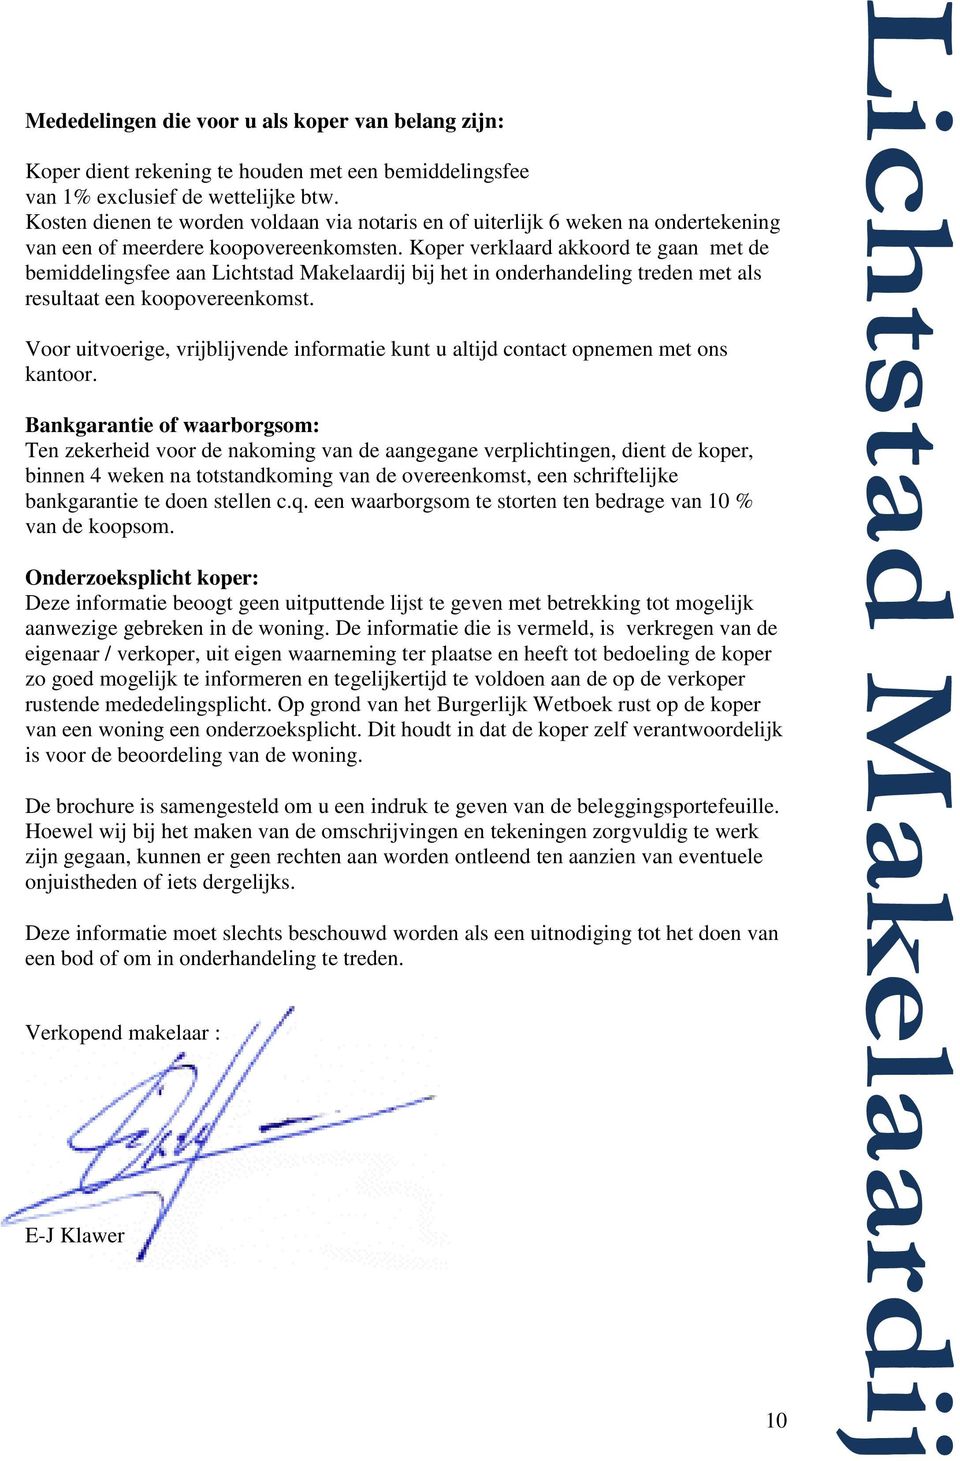 Koper verklaard akkoord te gaan met de bemiddelingsfee aan Lichtstad Makelaardij bij het in onderhandeling treden met als resultaat een koopovereenkomst.